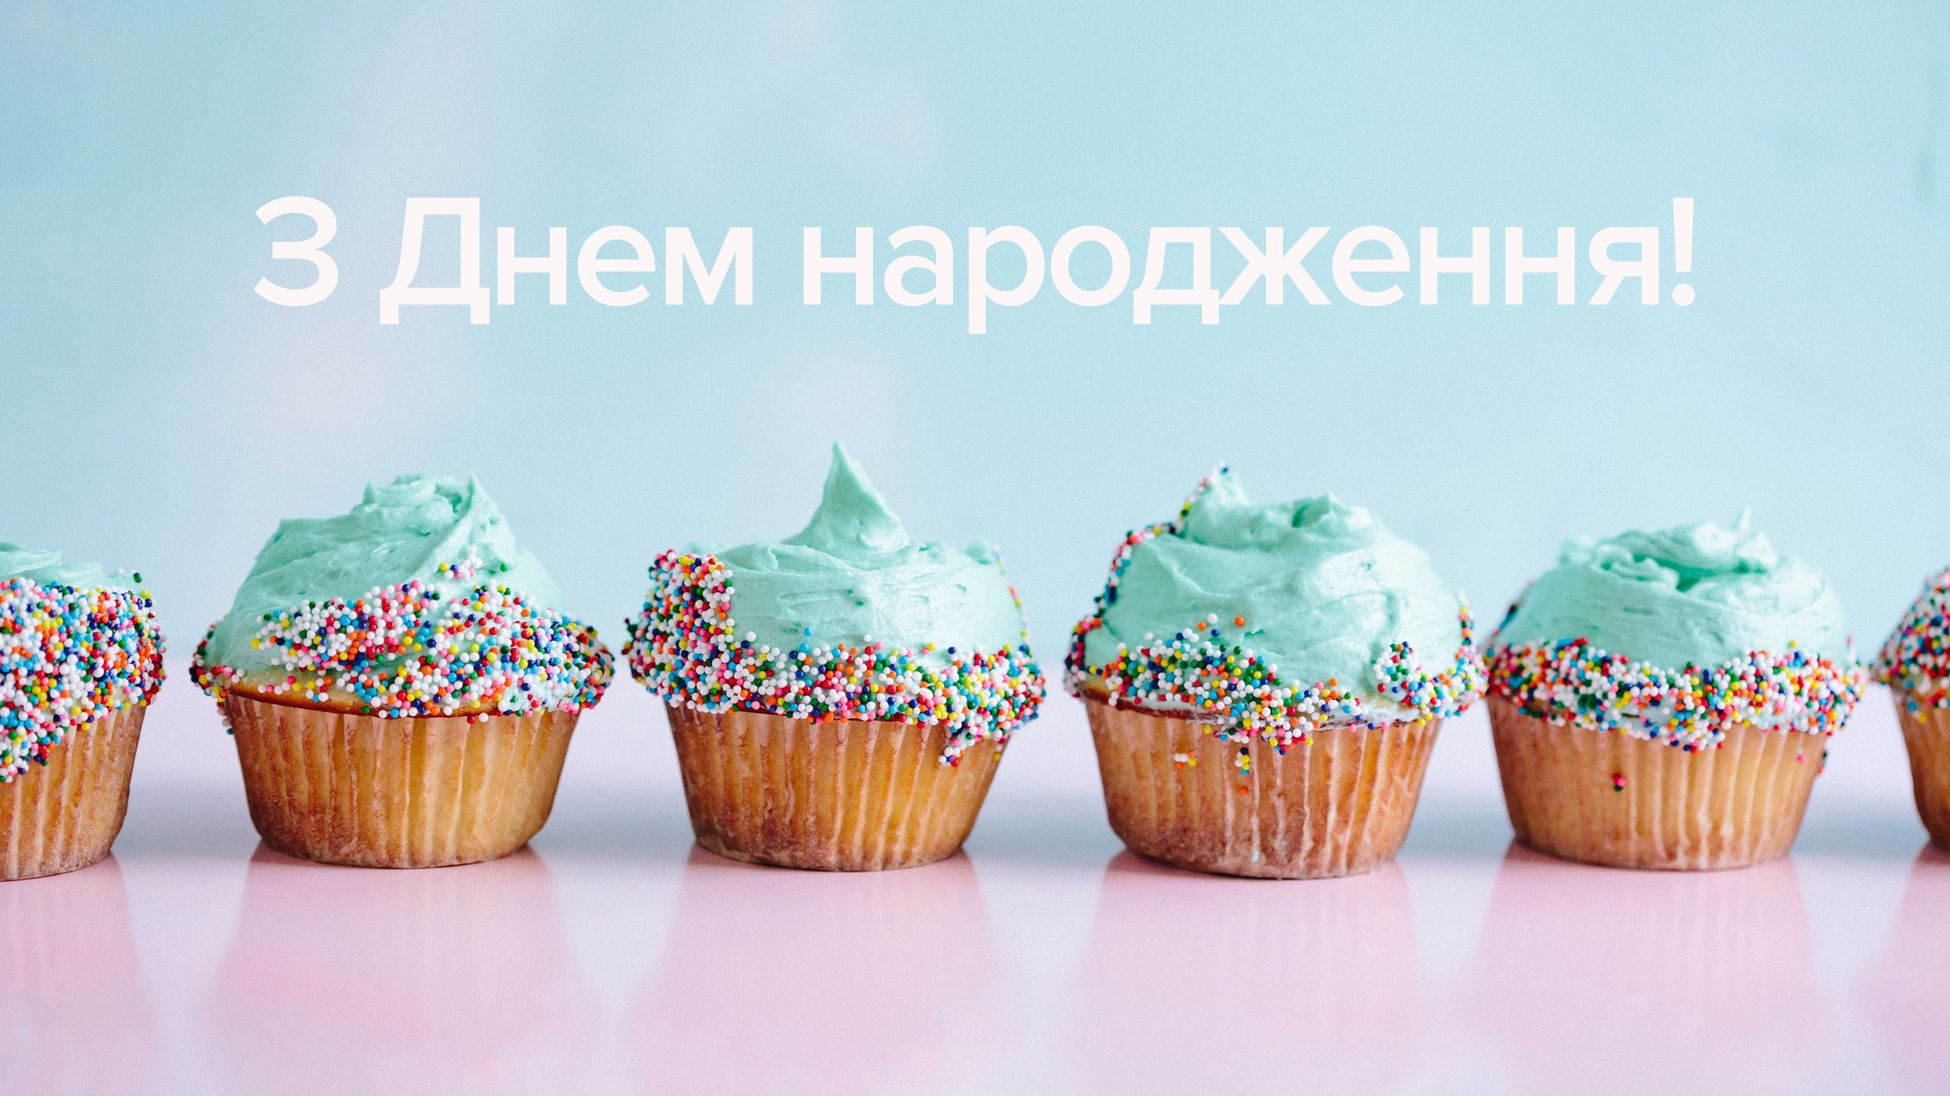 Привітання з днем народження подрузі українською мовою
